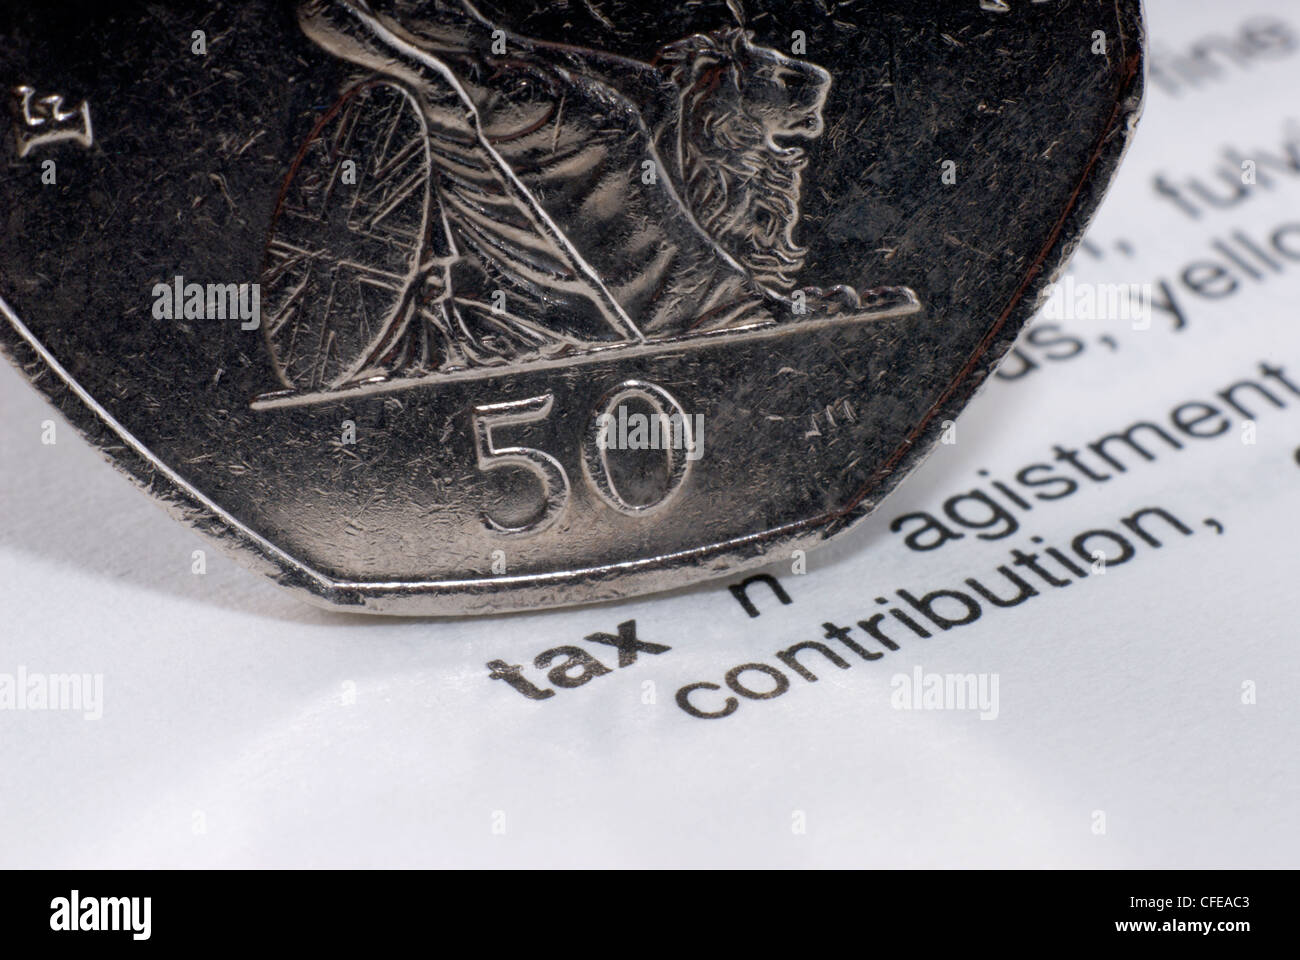 Allgemeines Bild von 50 Cent-Stück und einen Thesauruseintrag für das Wort steuern, um die fünfzig Pence zu veranschaulichen Steuersatz Stockfoto